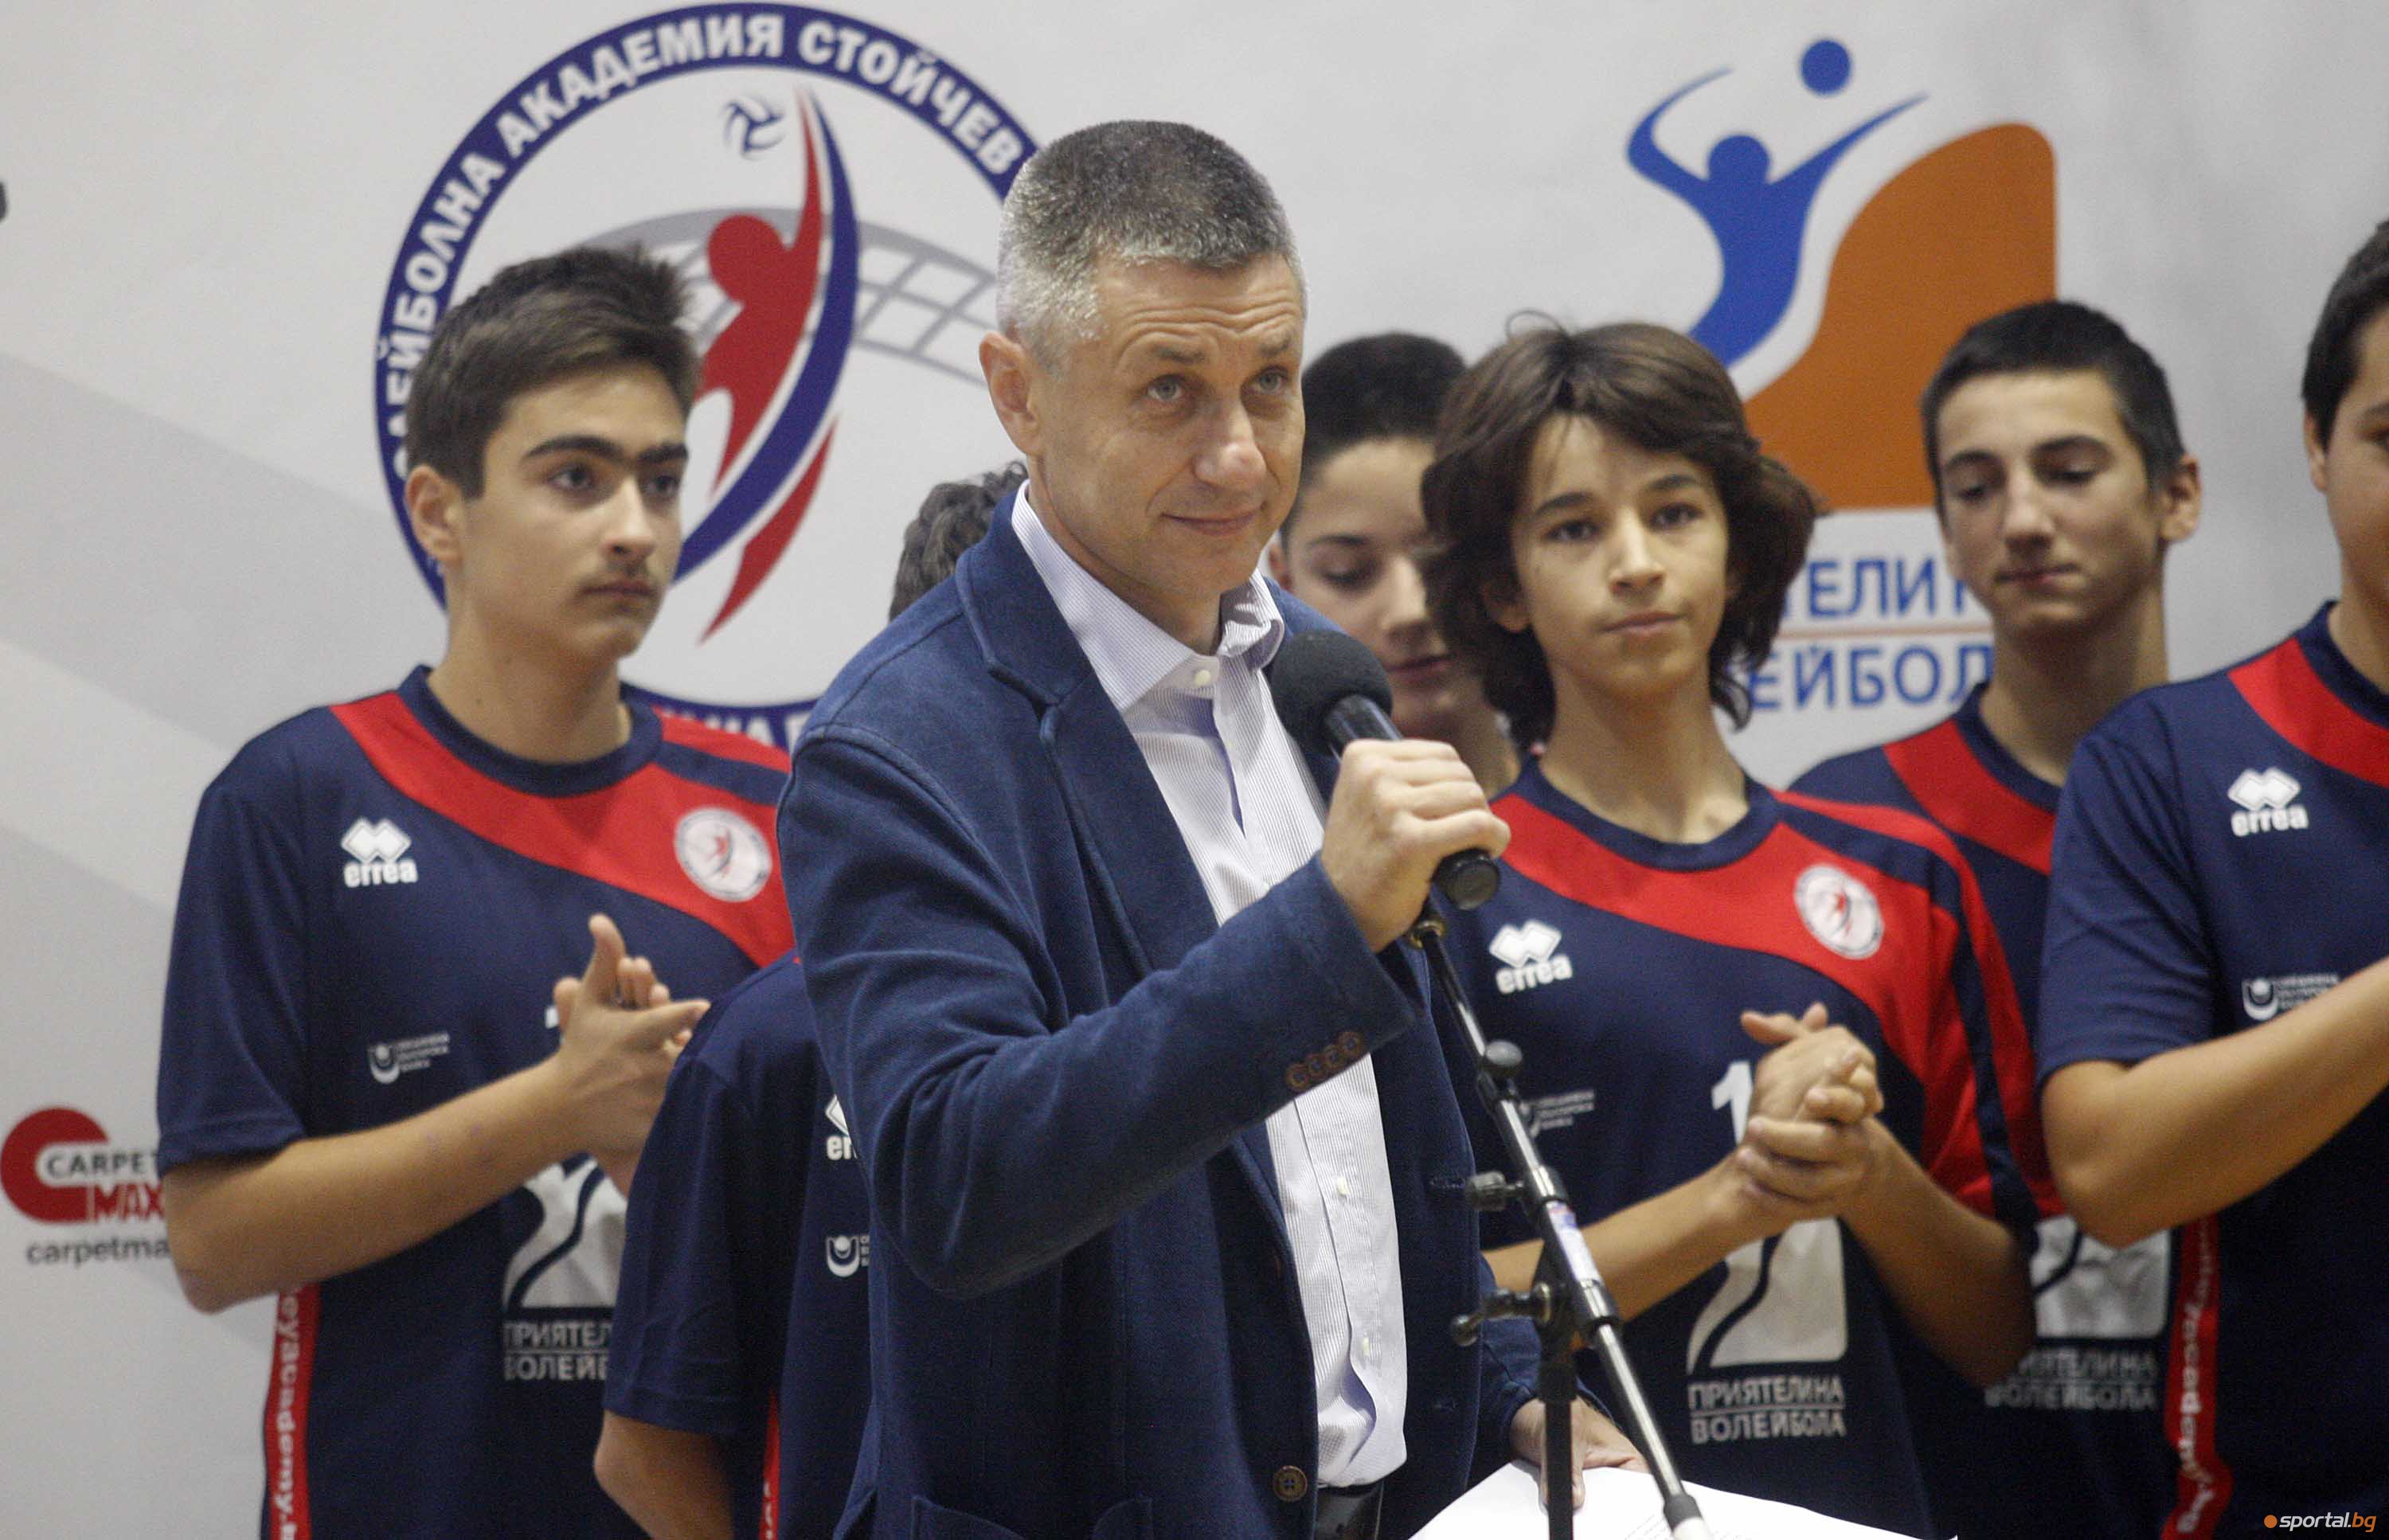 Откриха новата учебна година във волейболната академия Стойчев - Казийски